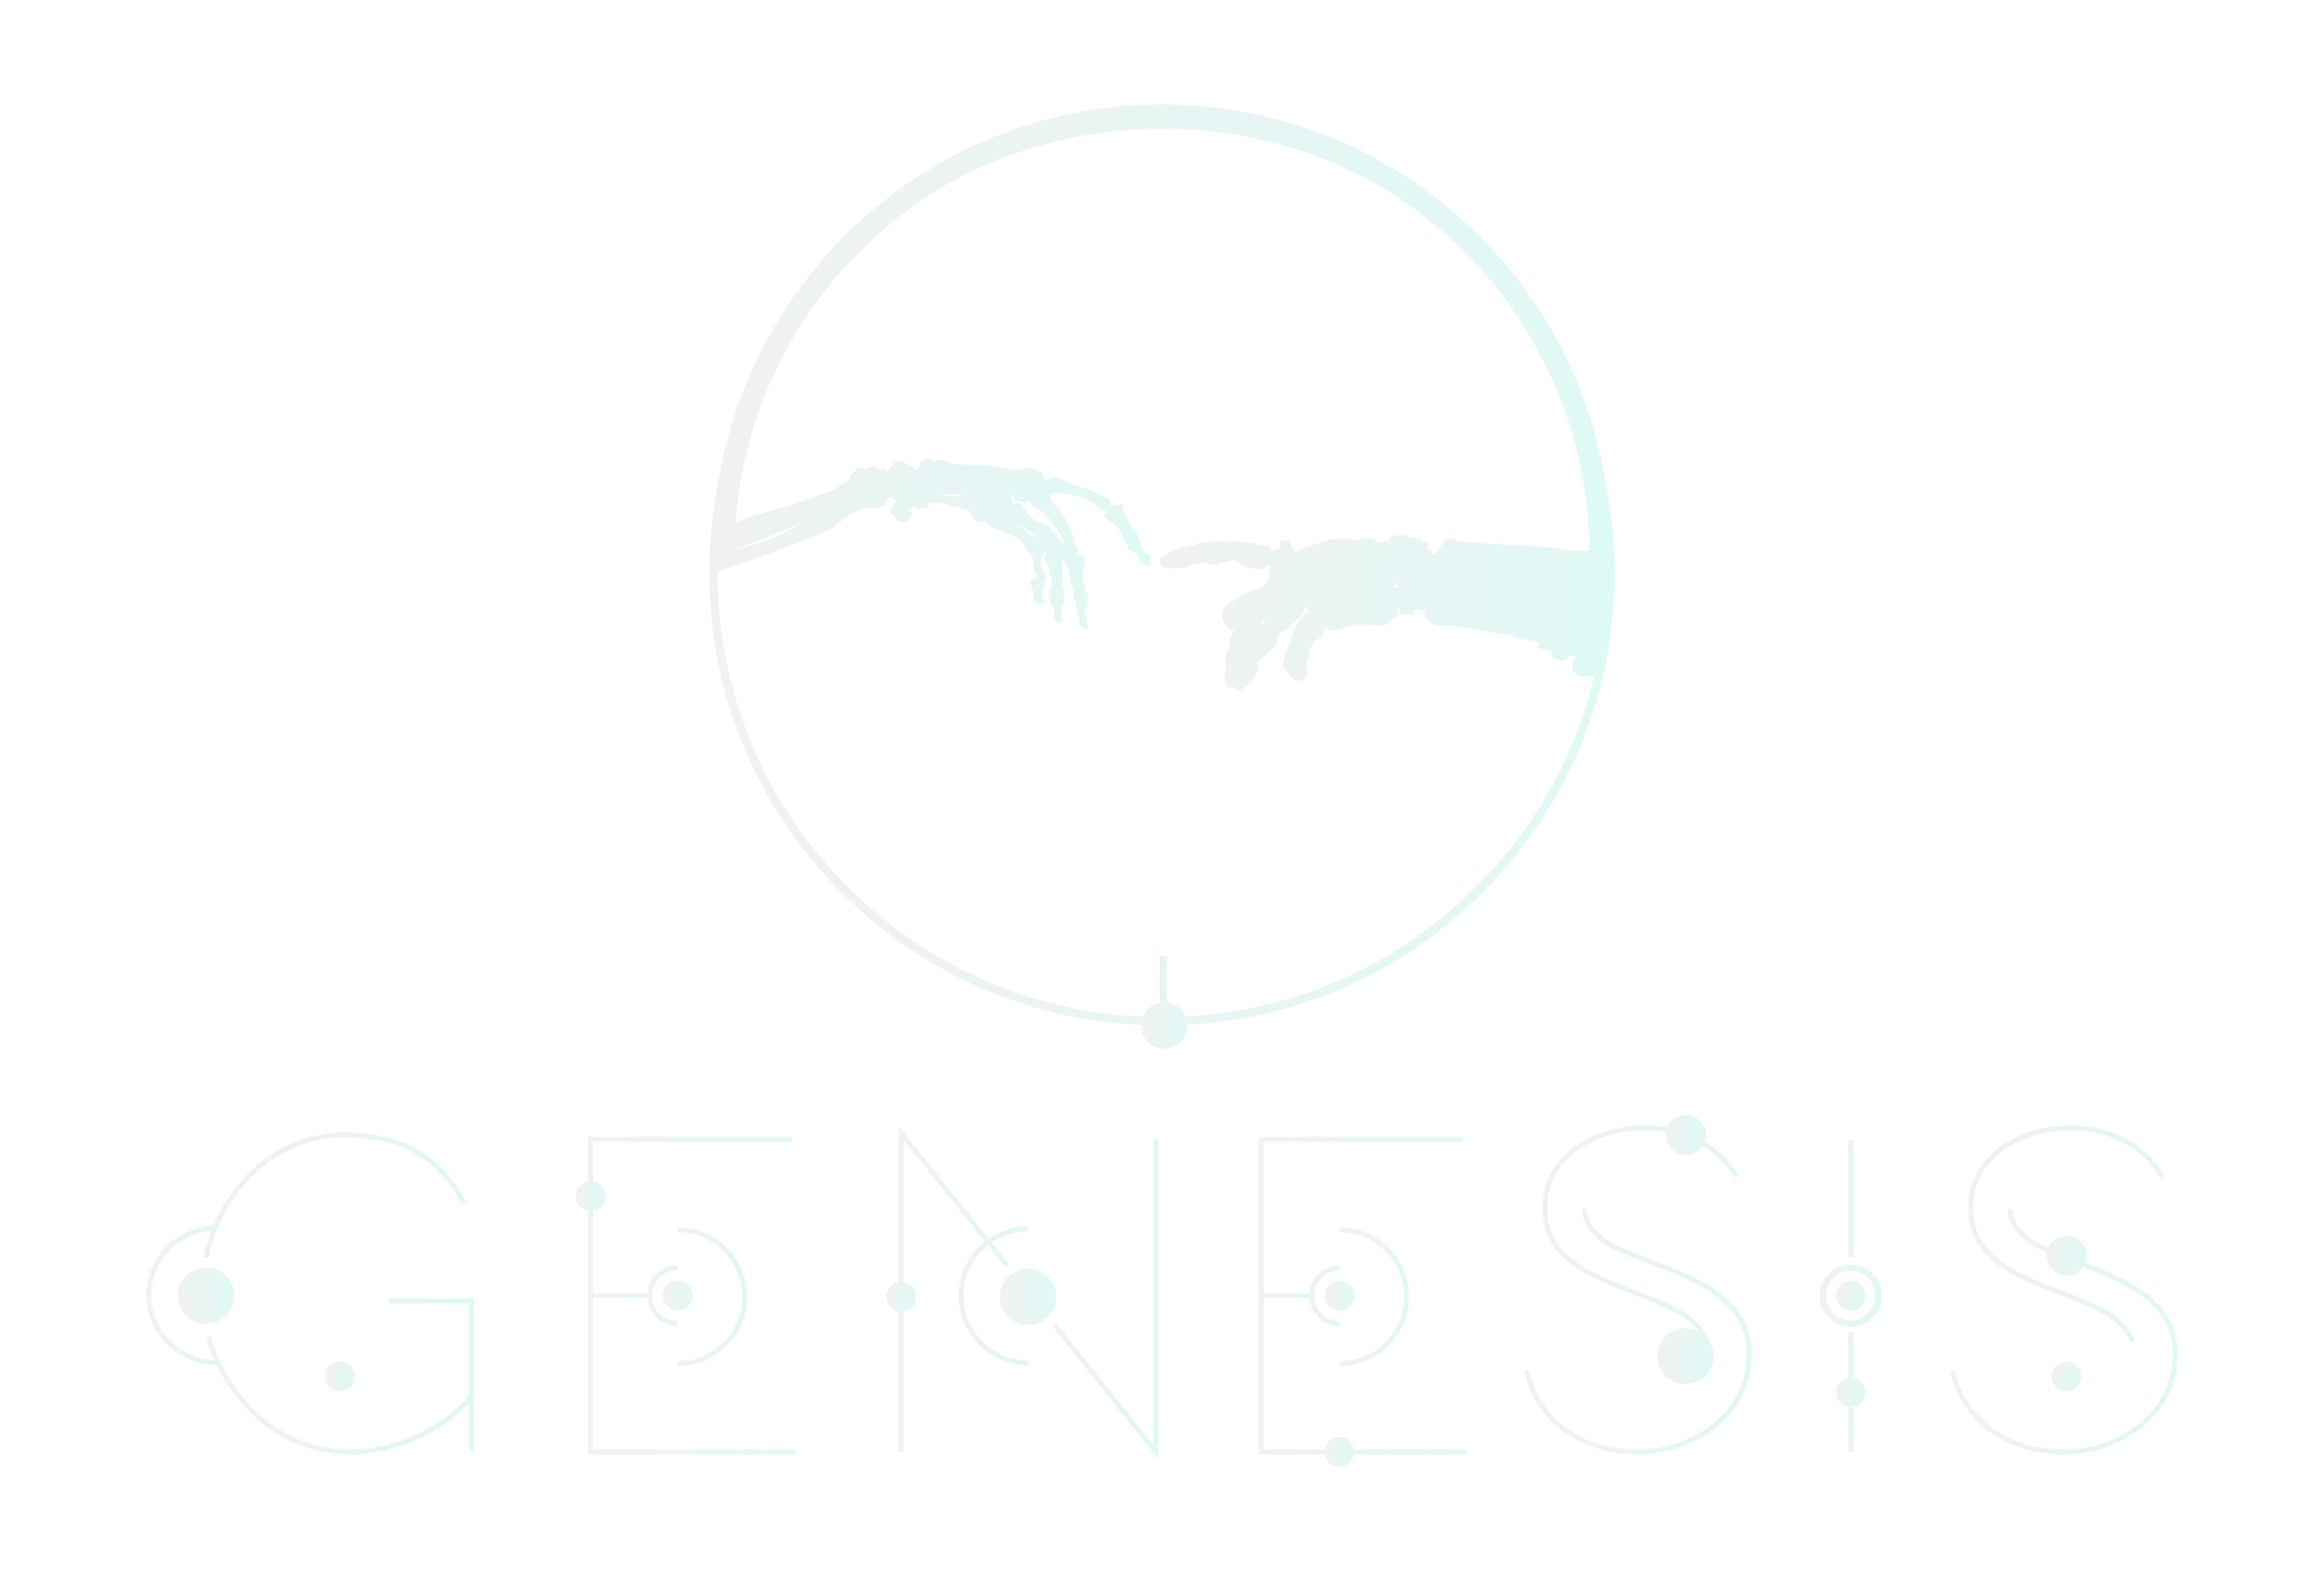 AR TCG logo. Logo for Genesis AR TCG game